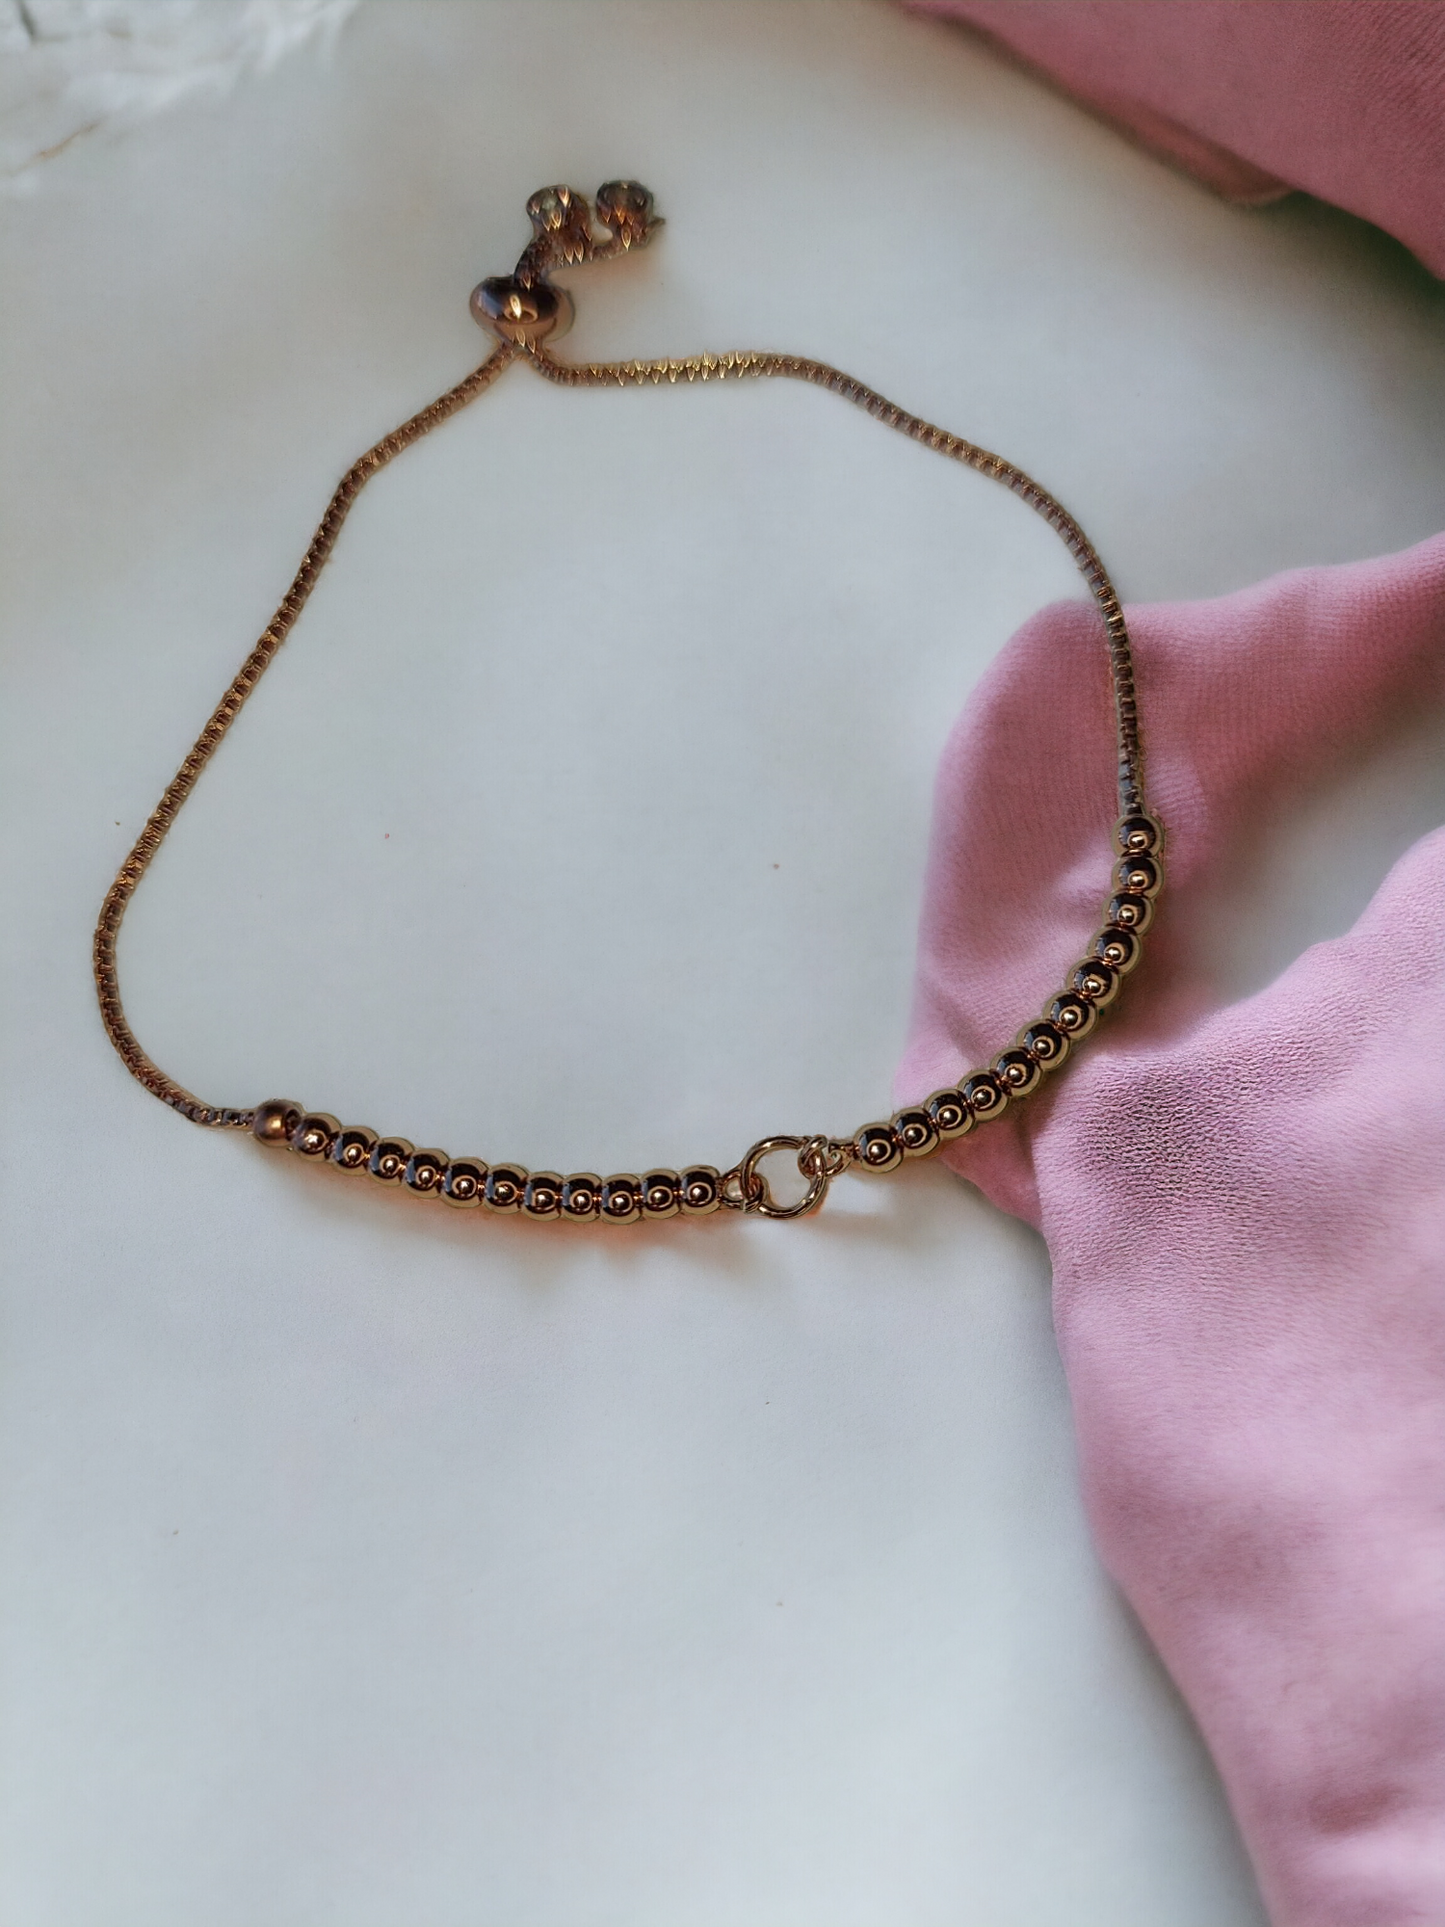 Adjustable Copper Bracelet